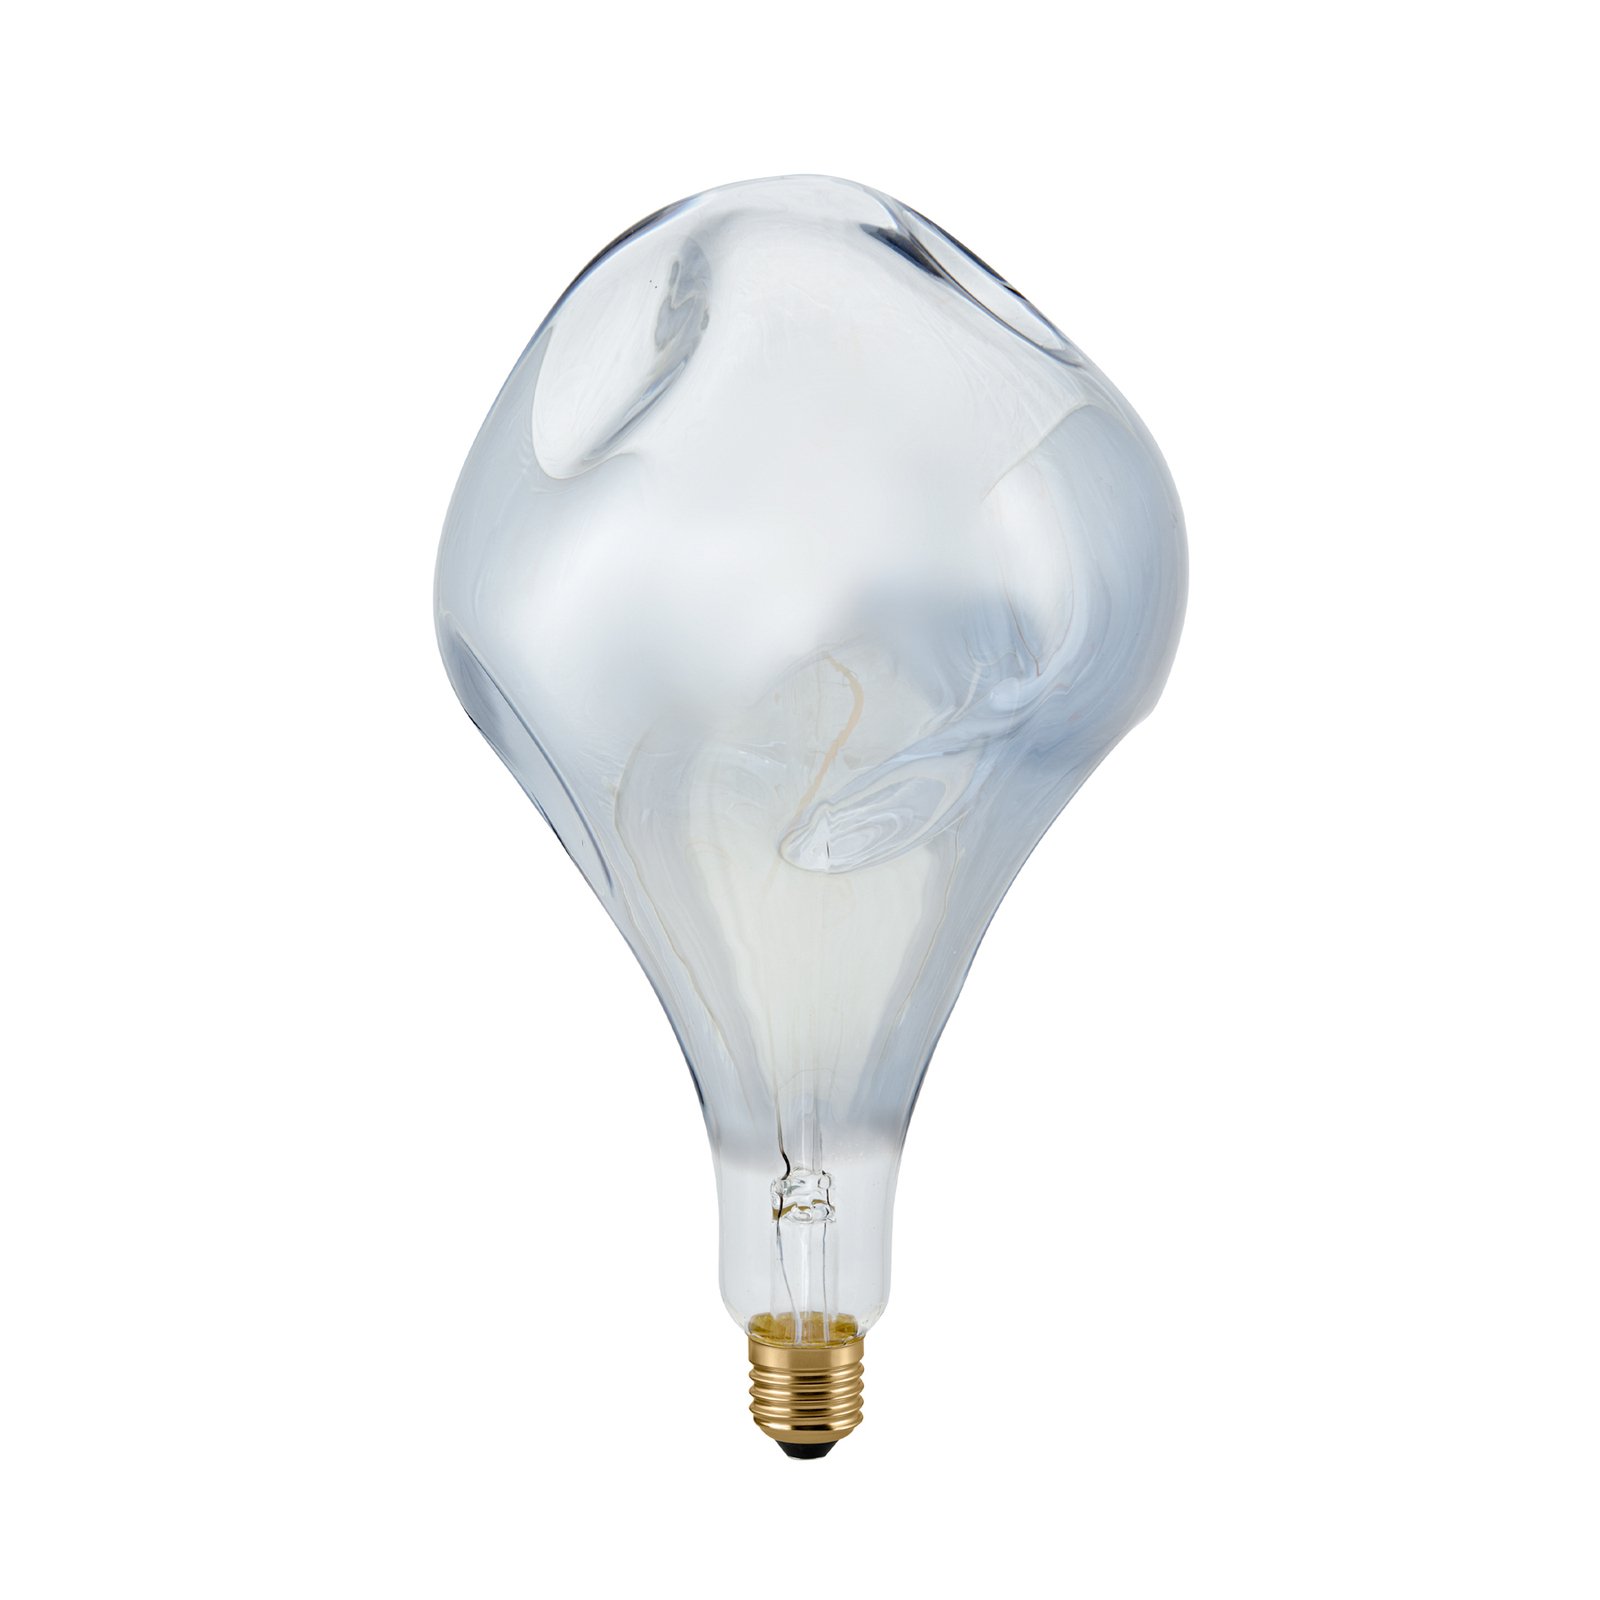 LED lamp Giant Drop E27 6W 918 dimbaar zilver-metaal.